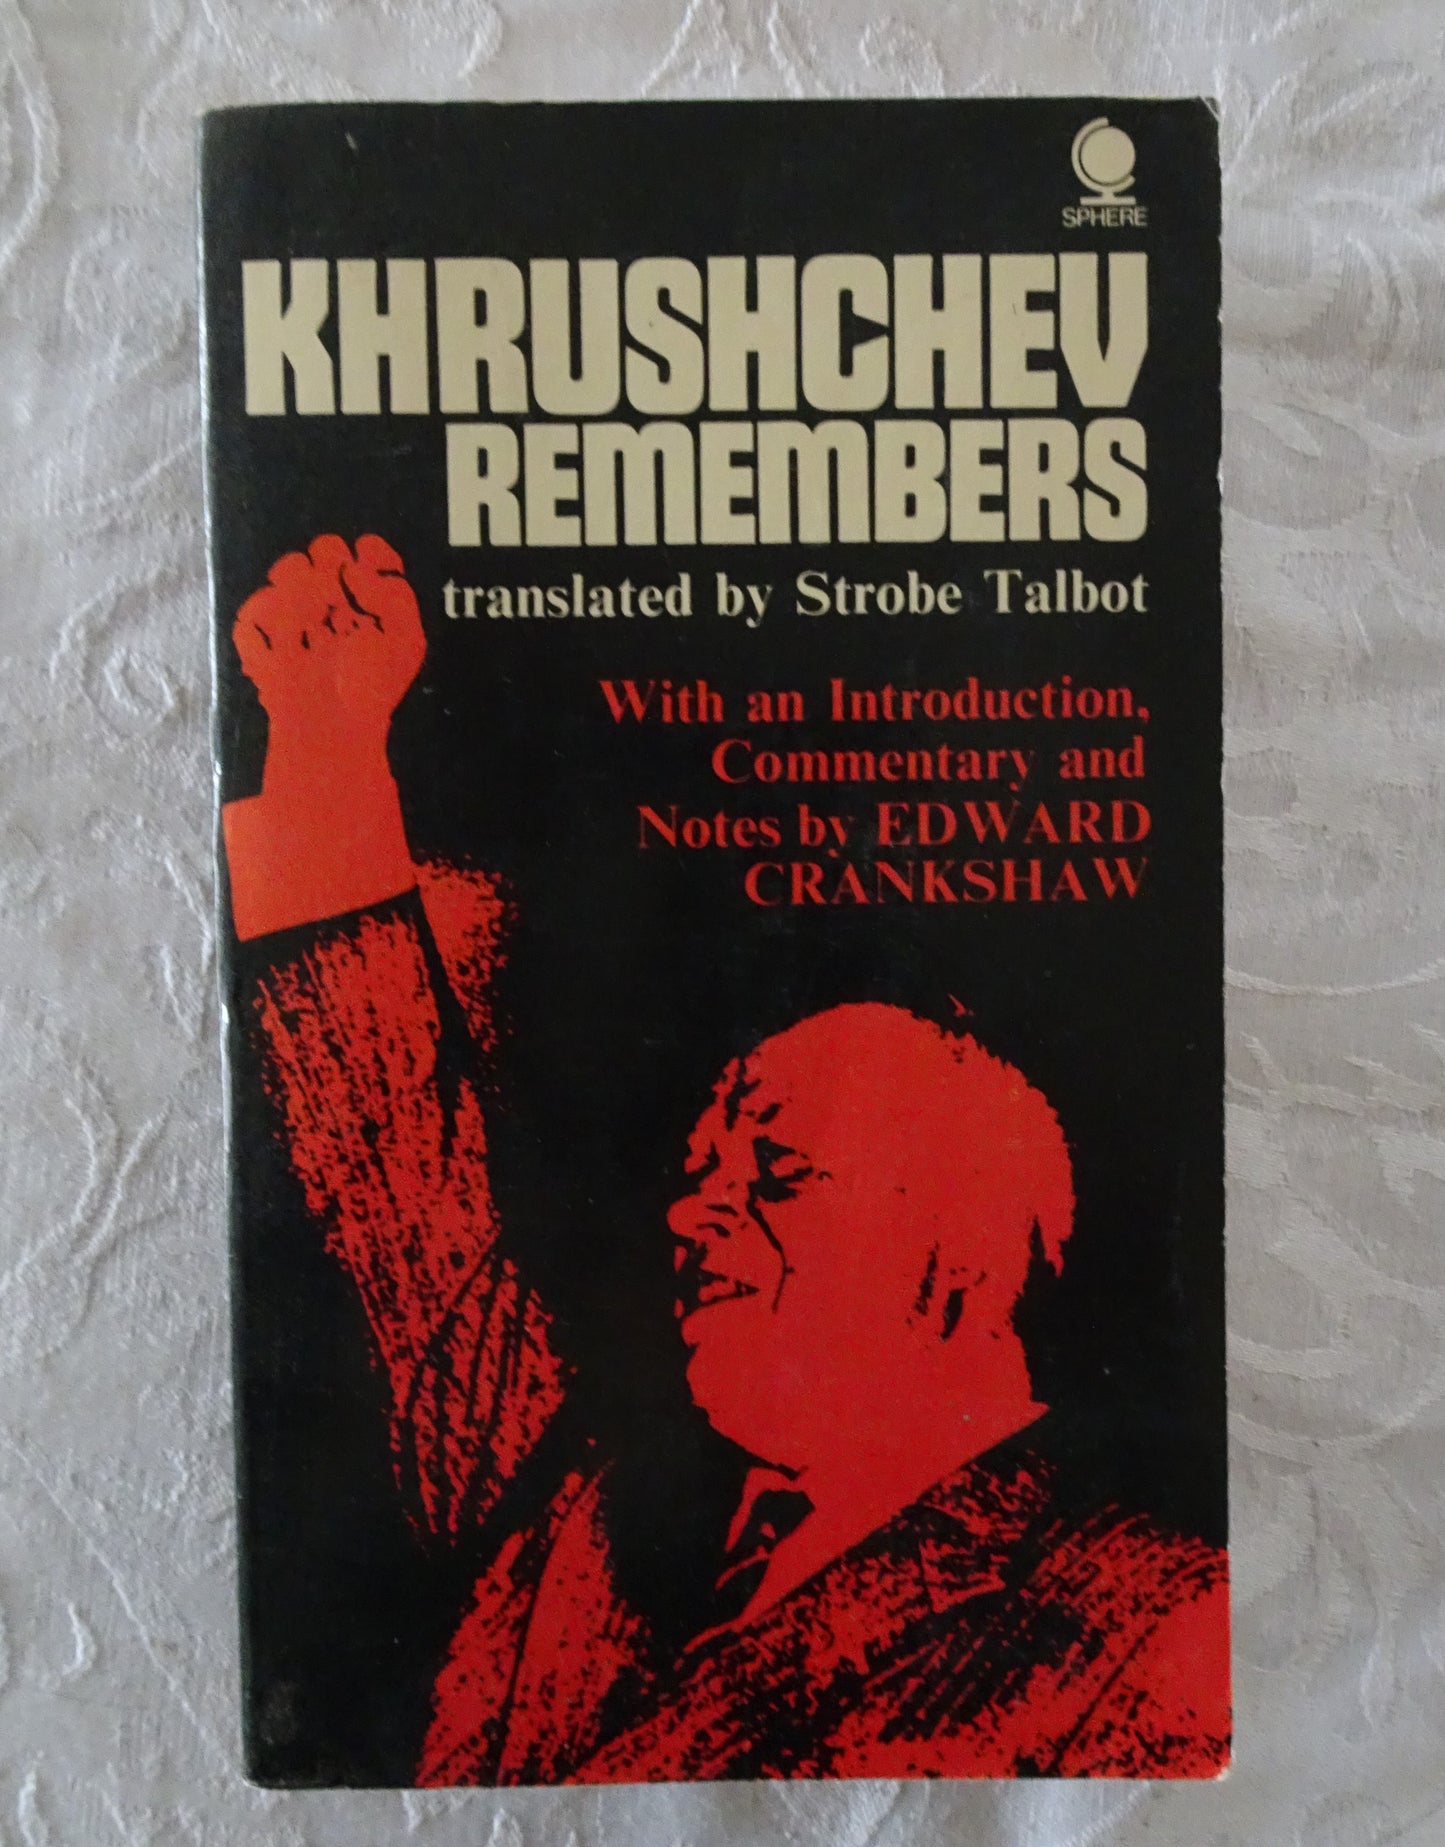 Khrushchev Remembers by Strobe Talbot